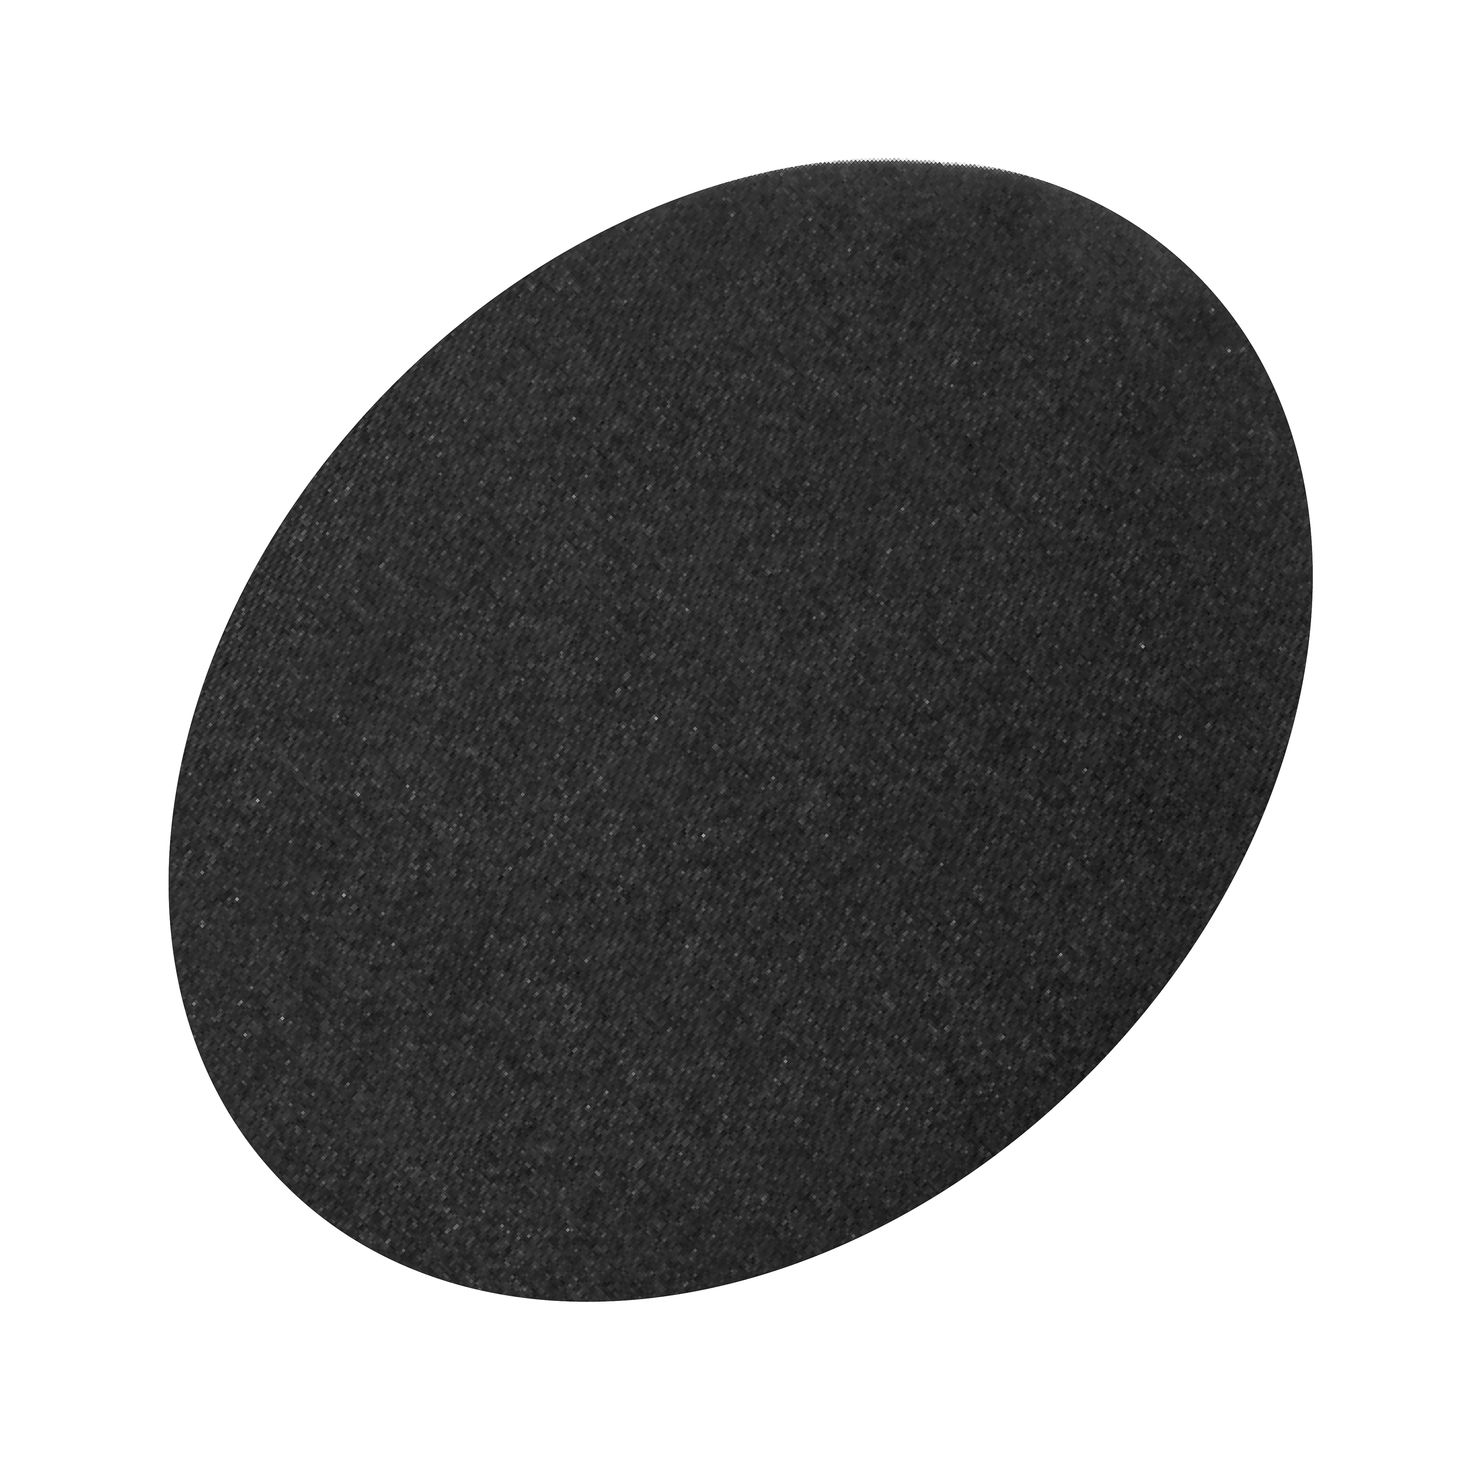 Заплатка термоклеевая (уп.1 пара) овальная 142 х 110 мм, 15сек при темп.150°С, цвет черный